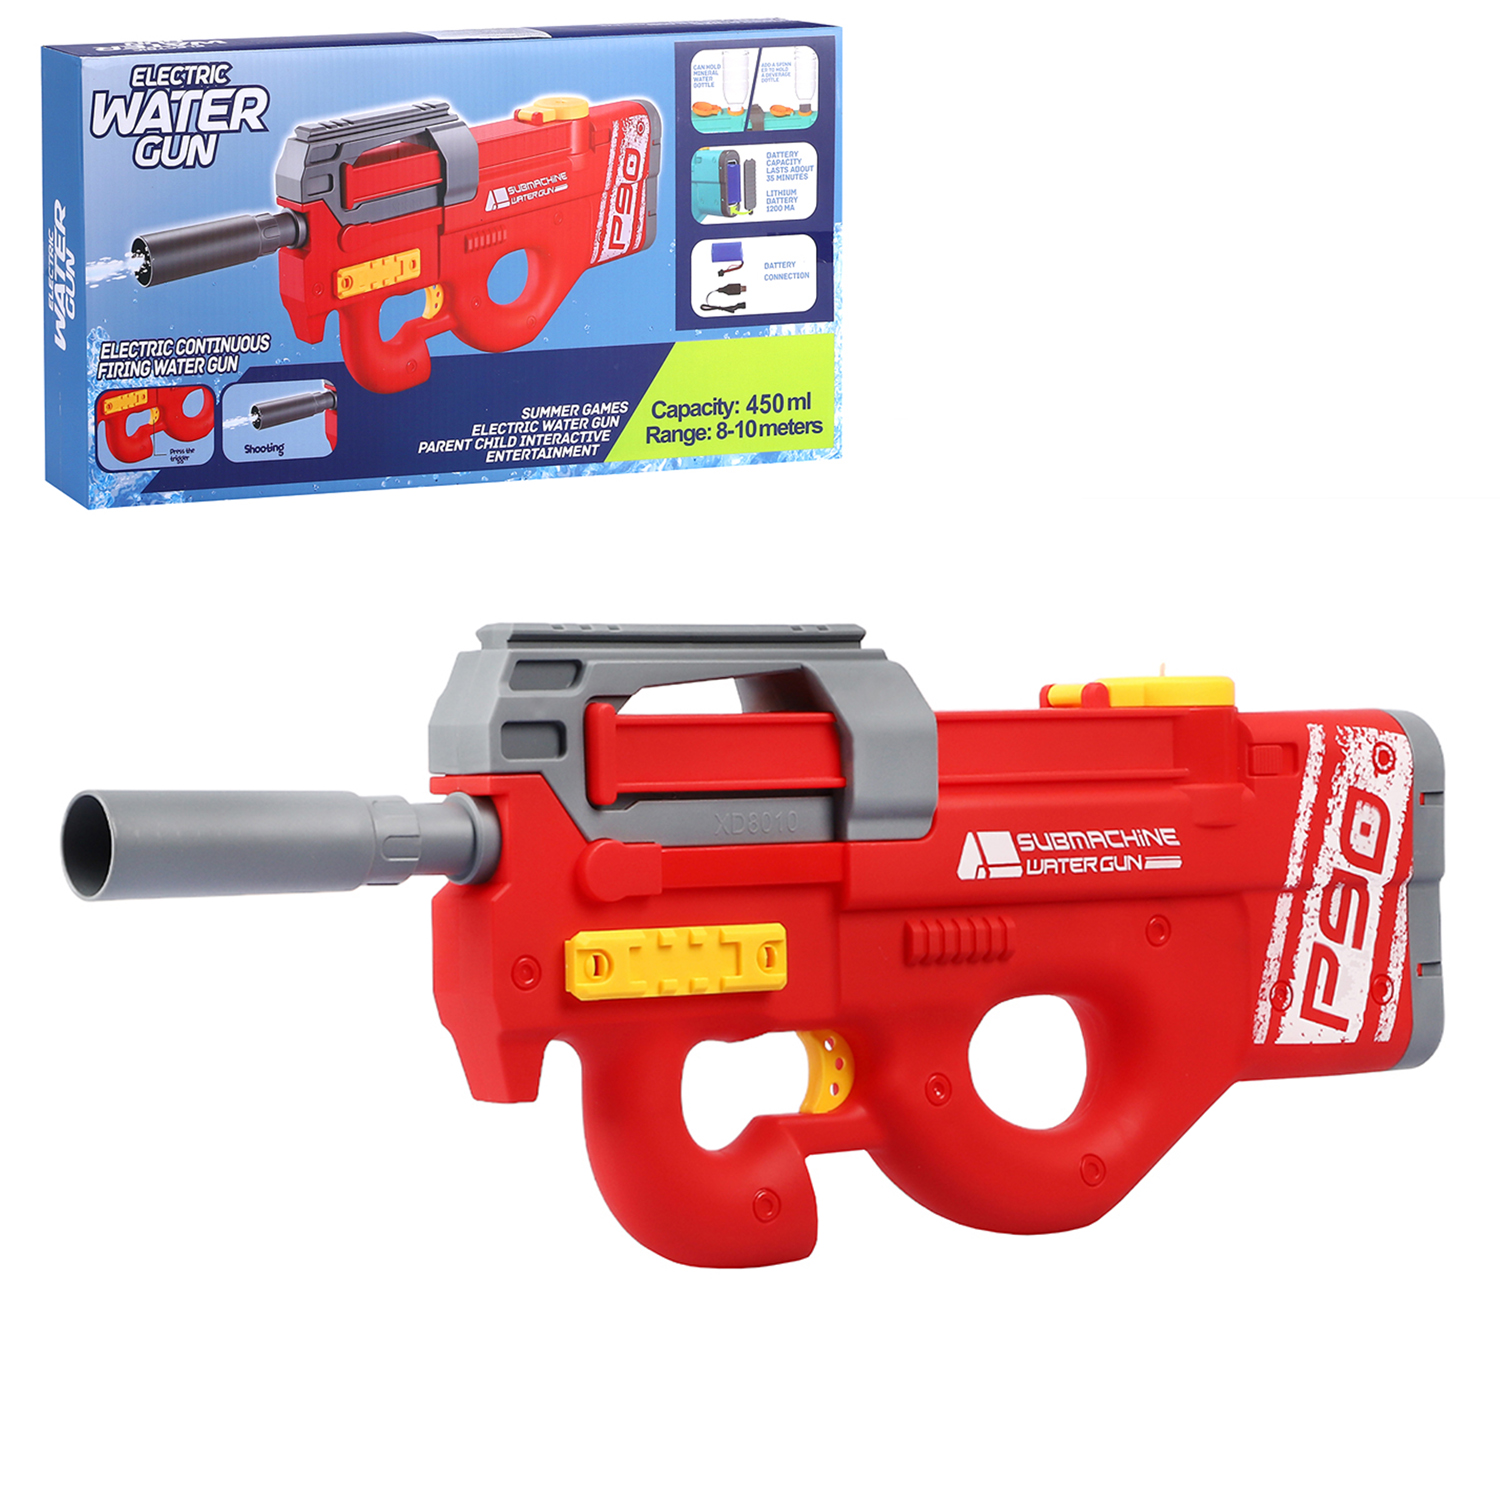 Водный пистолет игрушечный, электропистолет, на аккумуляторе, красный, JB0211236 водяное оружие на аккумуляторе пистолет игрушечный с функцией спрея водный бой jb0211495